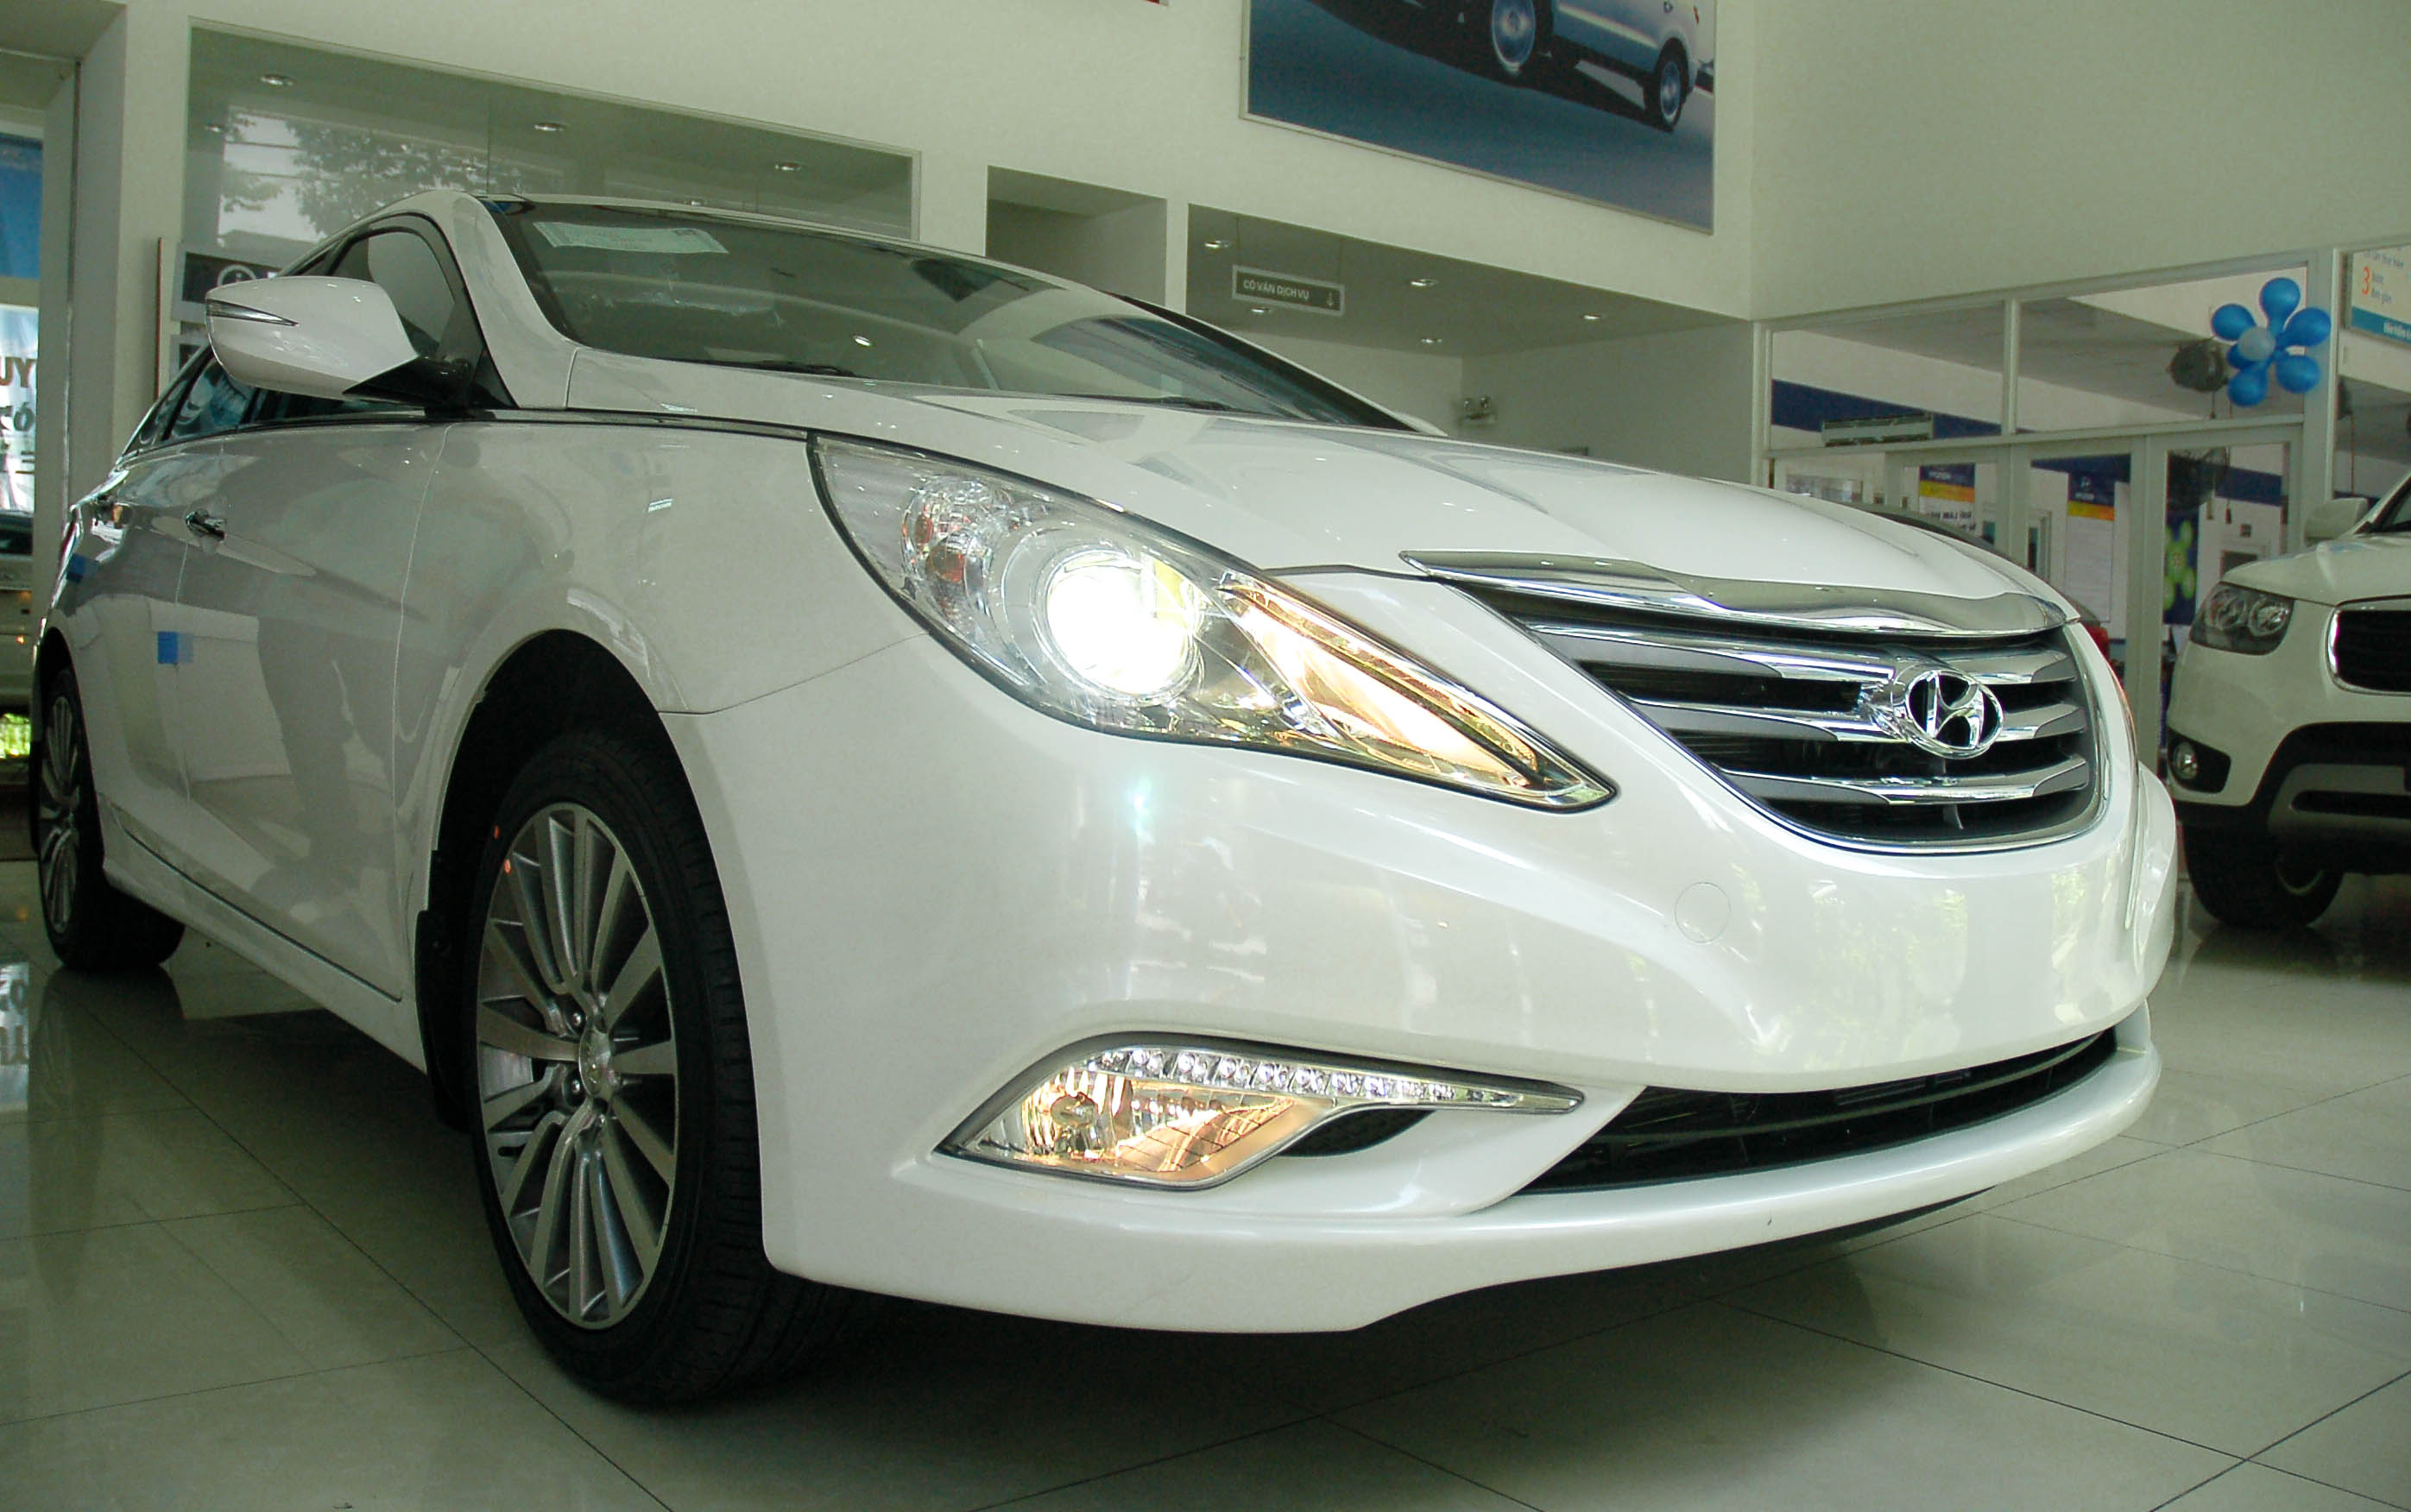 600 triệu đồng có nên mua Hyundai Sonata 2013 đã qua sử dụng